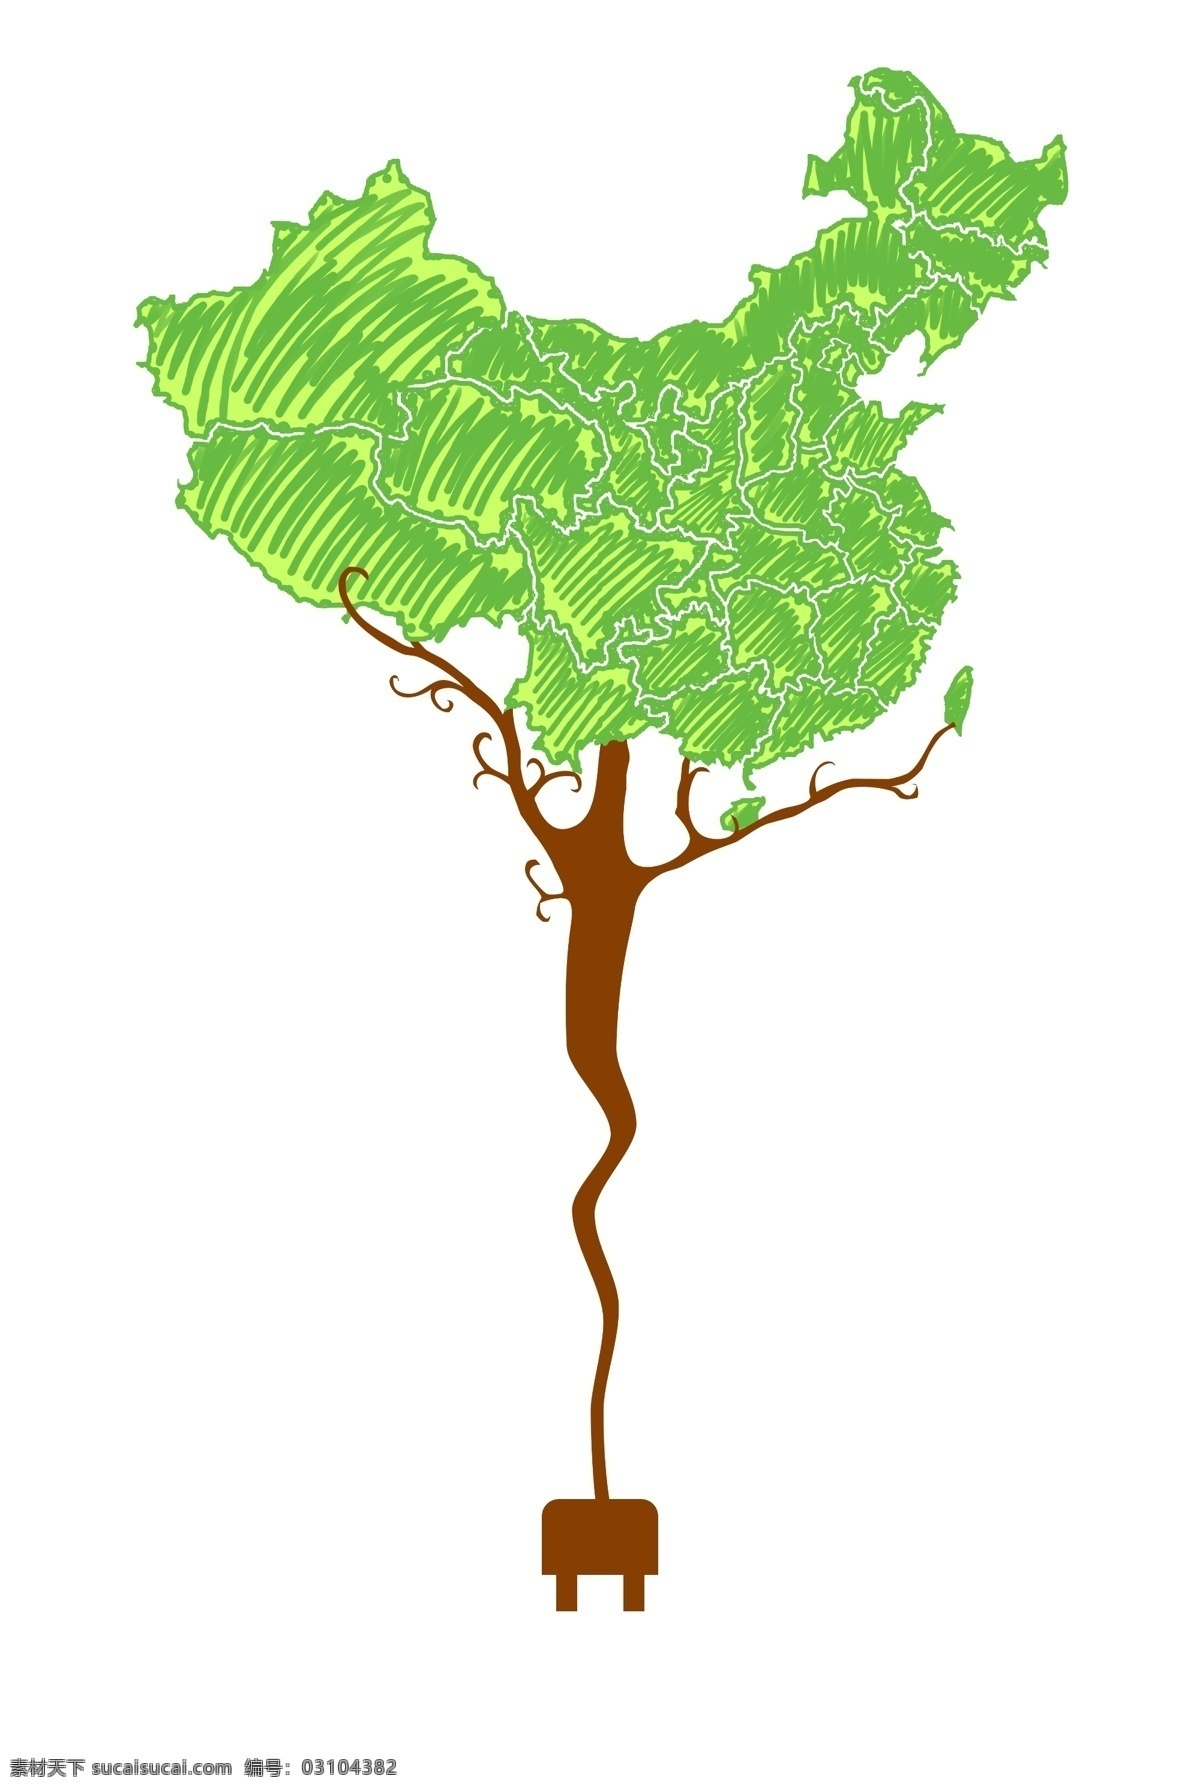 植树节 保护 环境 保护环境 中国地图 地图 树枝 创意